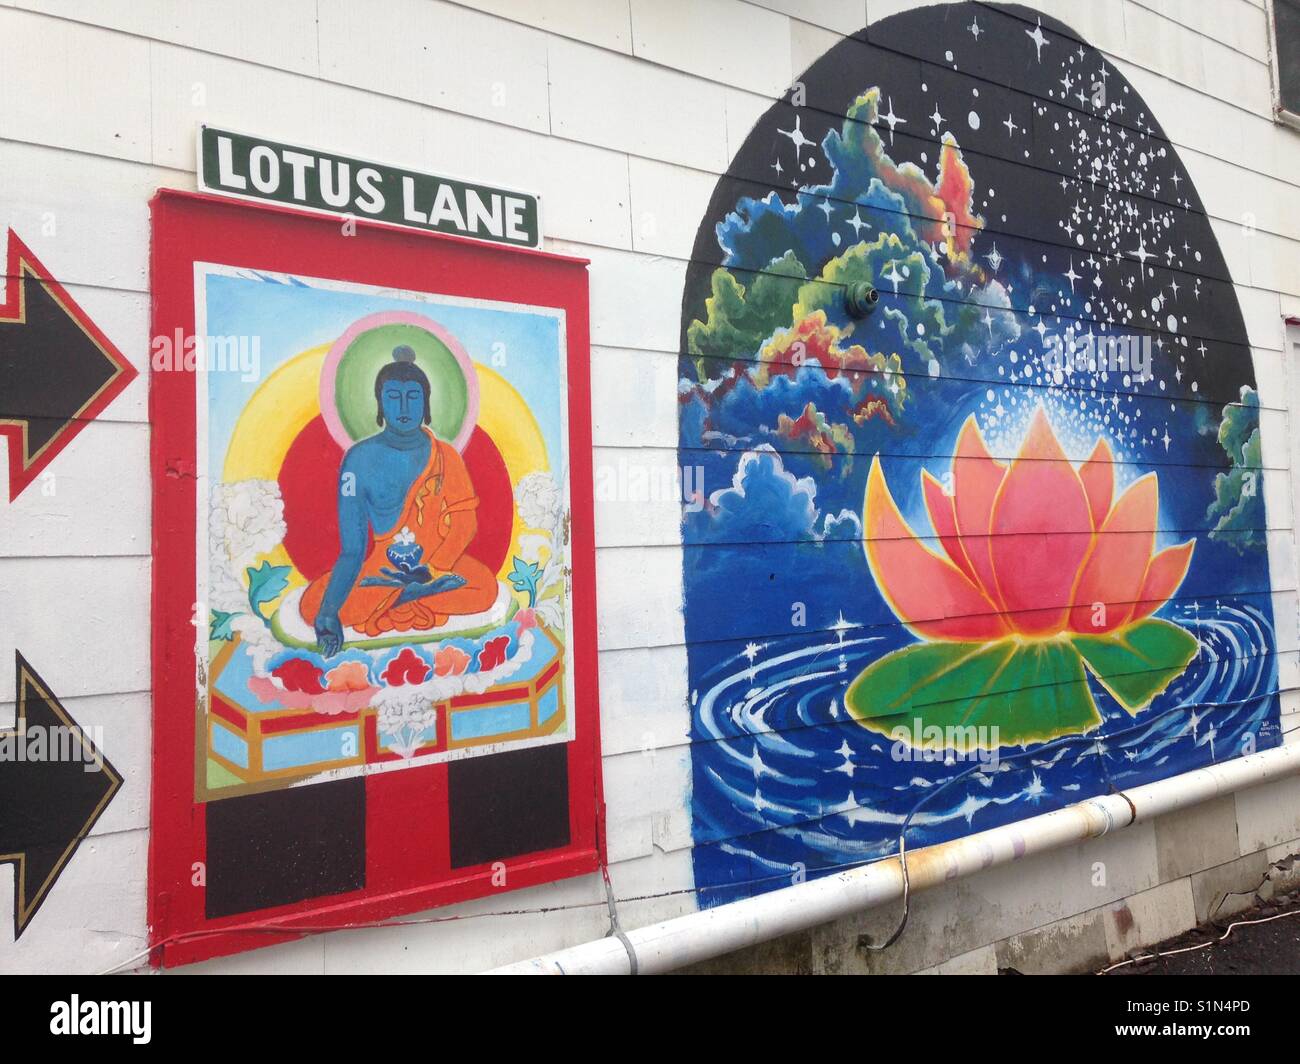 This way to lotus lane Stock Photo